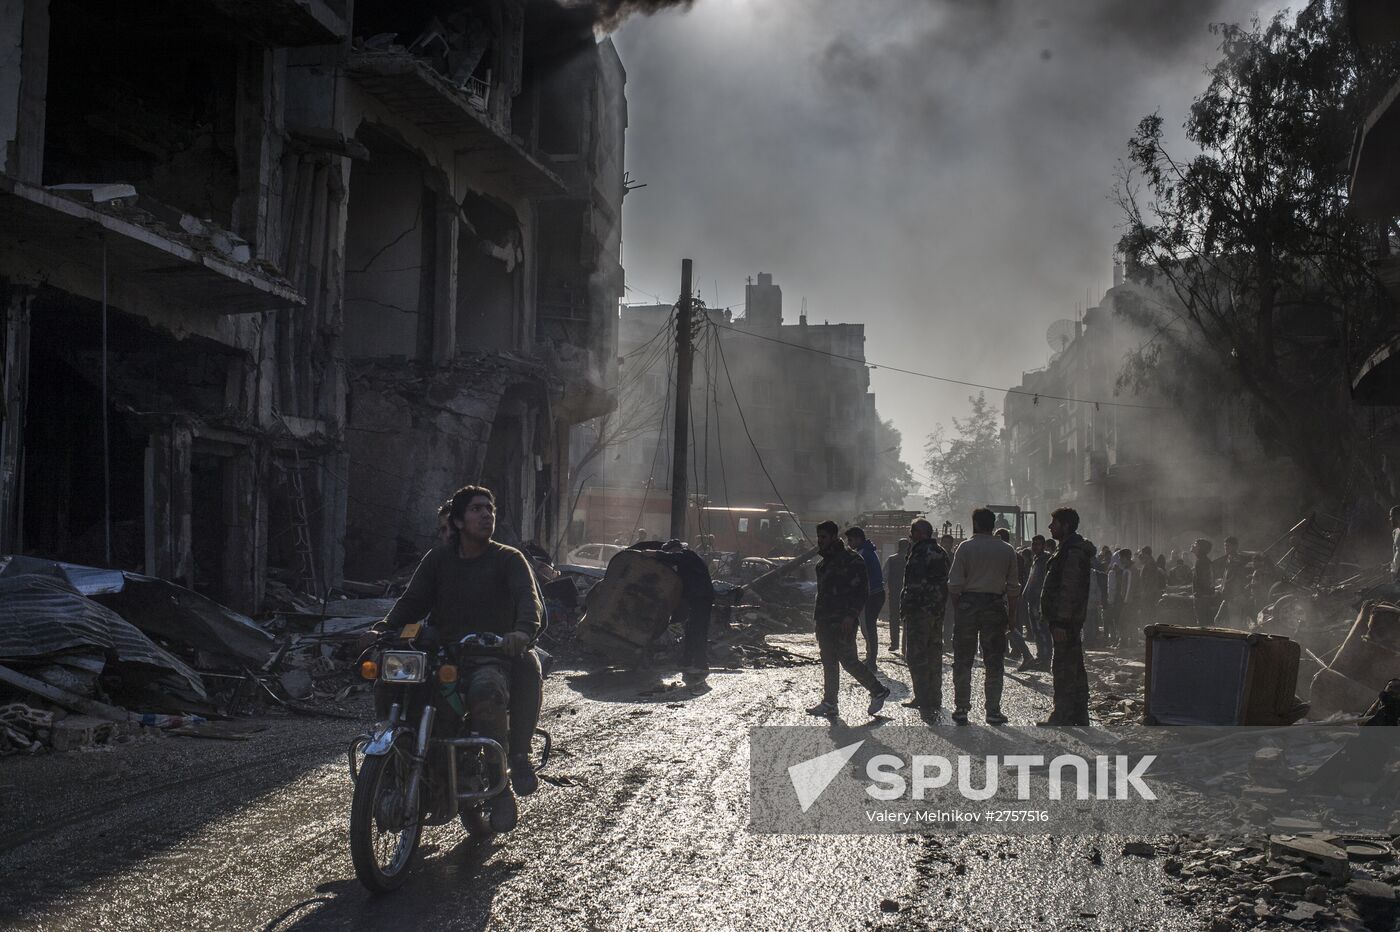 Terror act in Homs